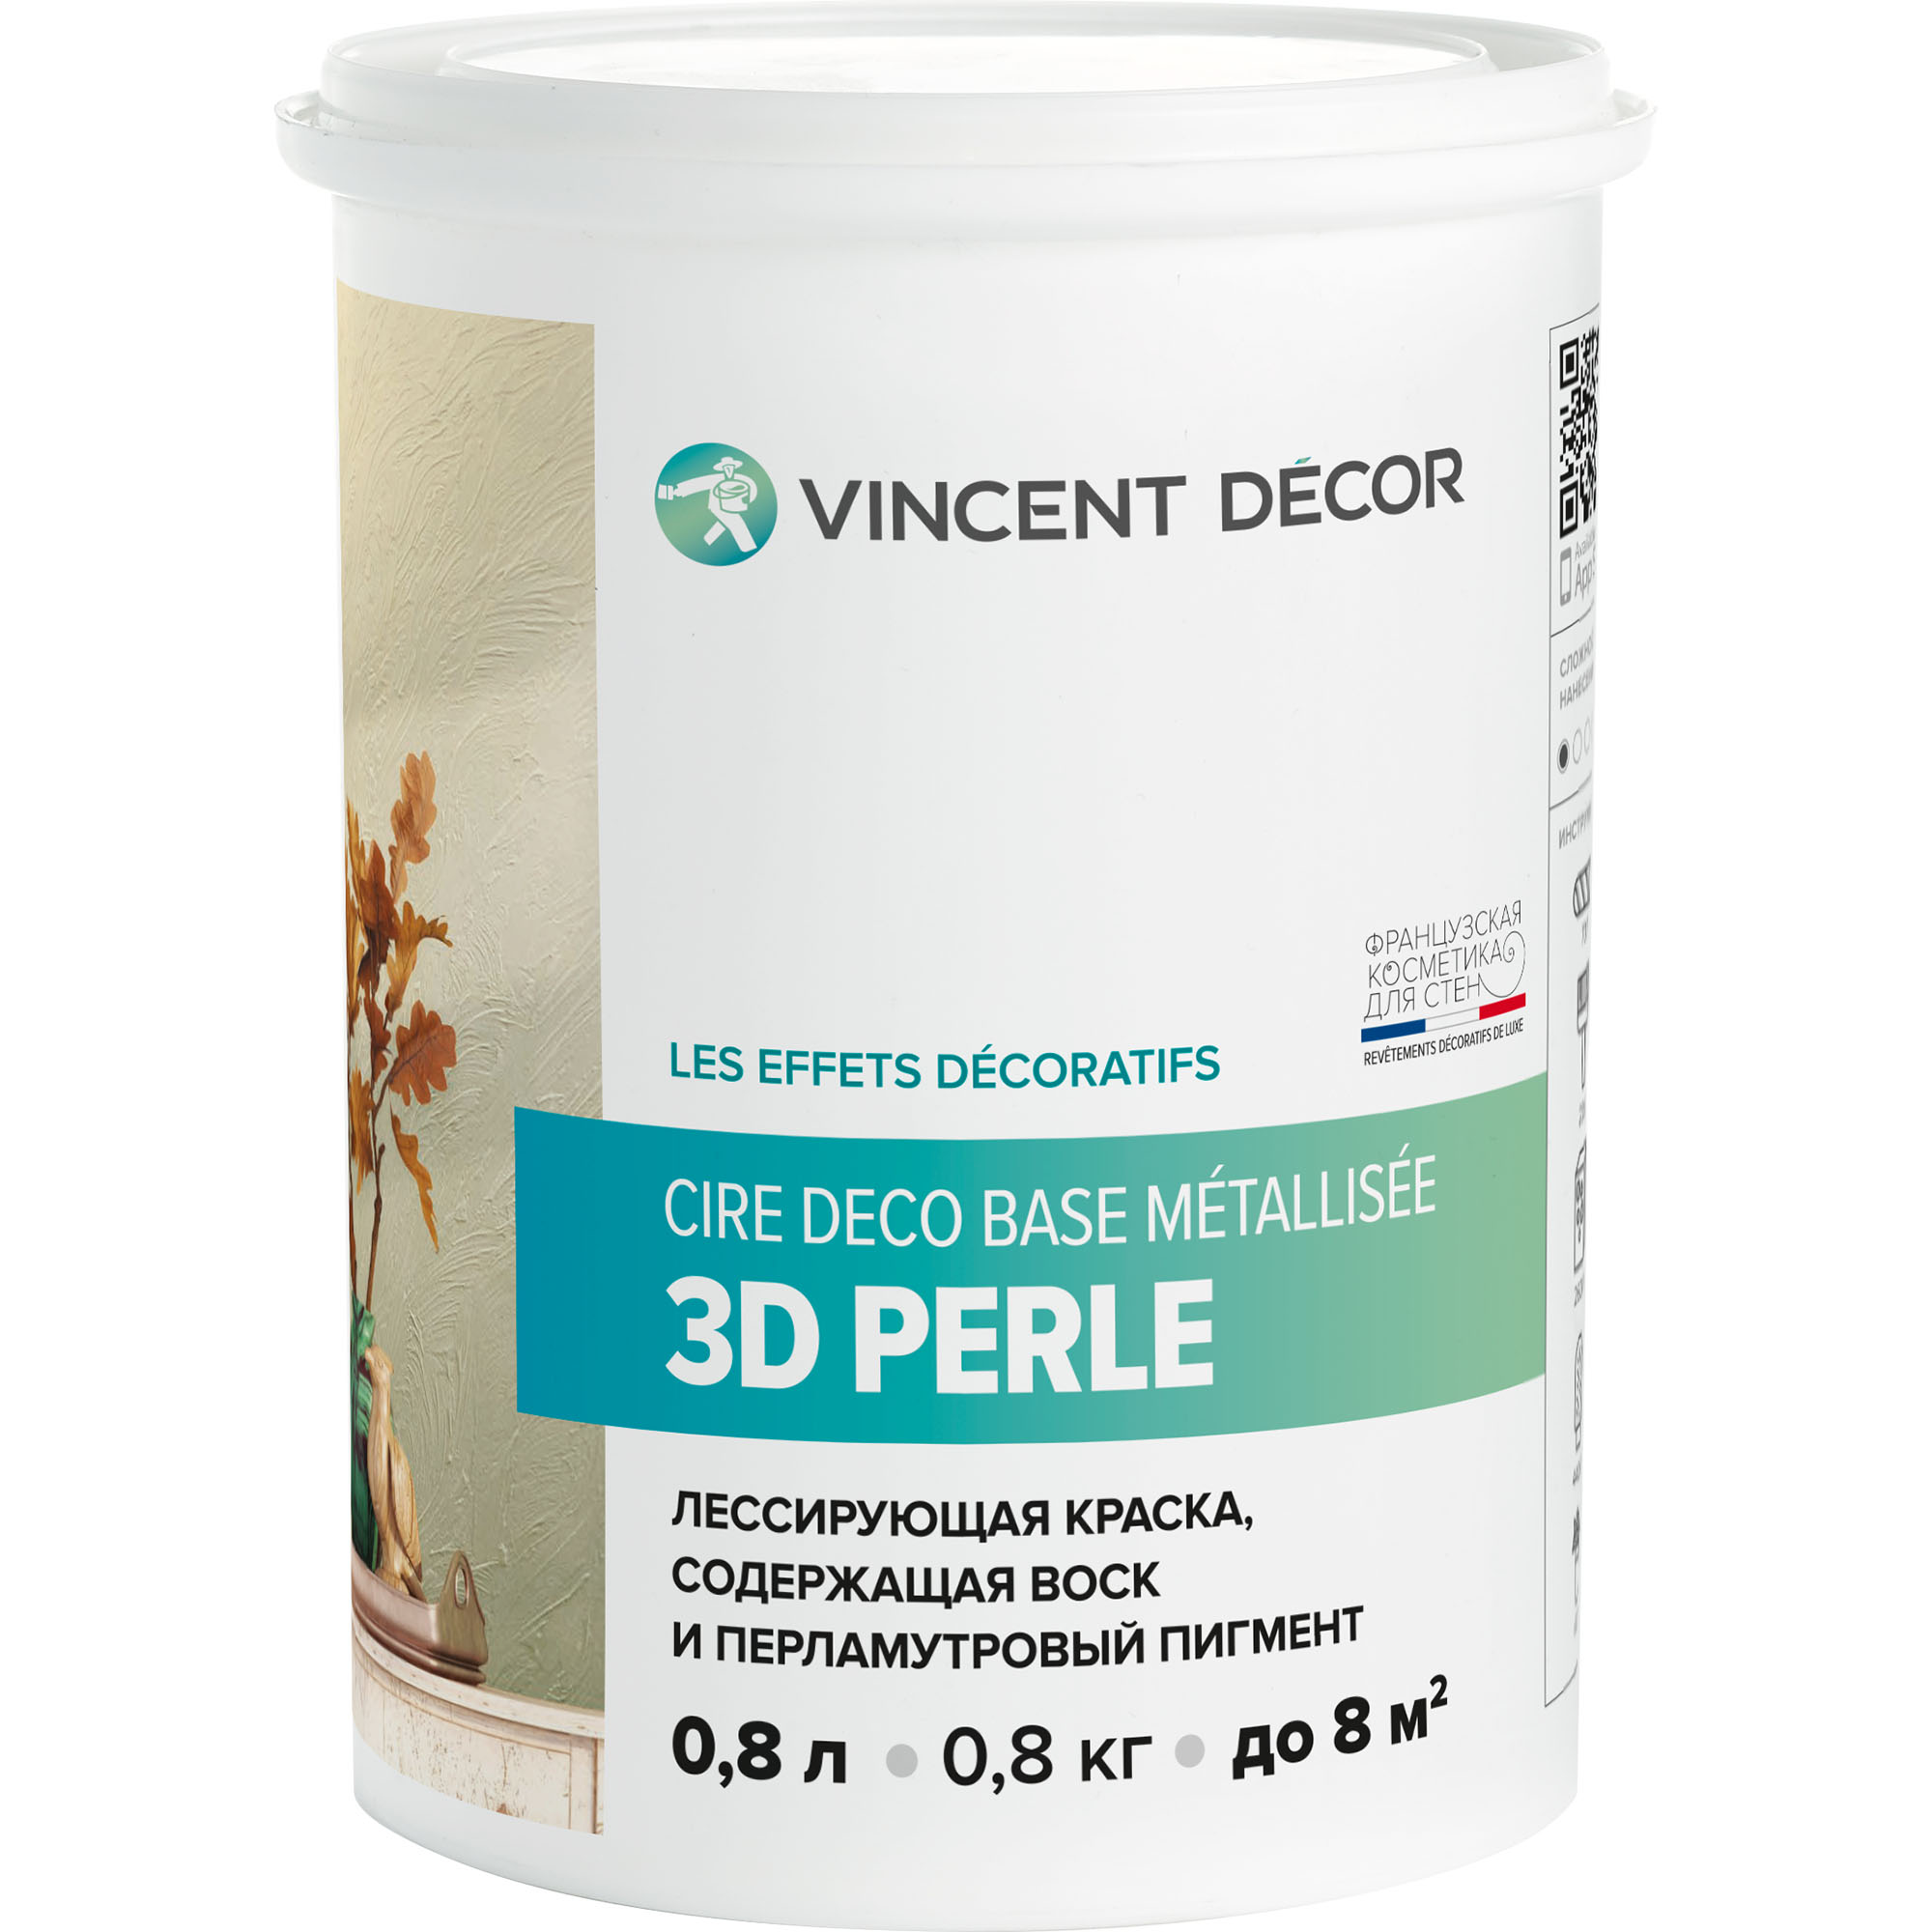 Краска лессирующая для декоративных покрытий Vincent Decor Cire deco base Metallisee 3D Perle золотистый перламутр 0,8 л